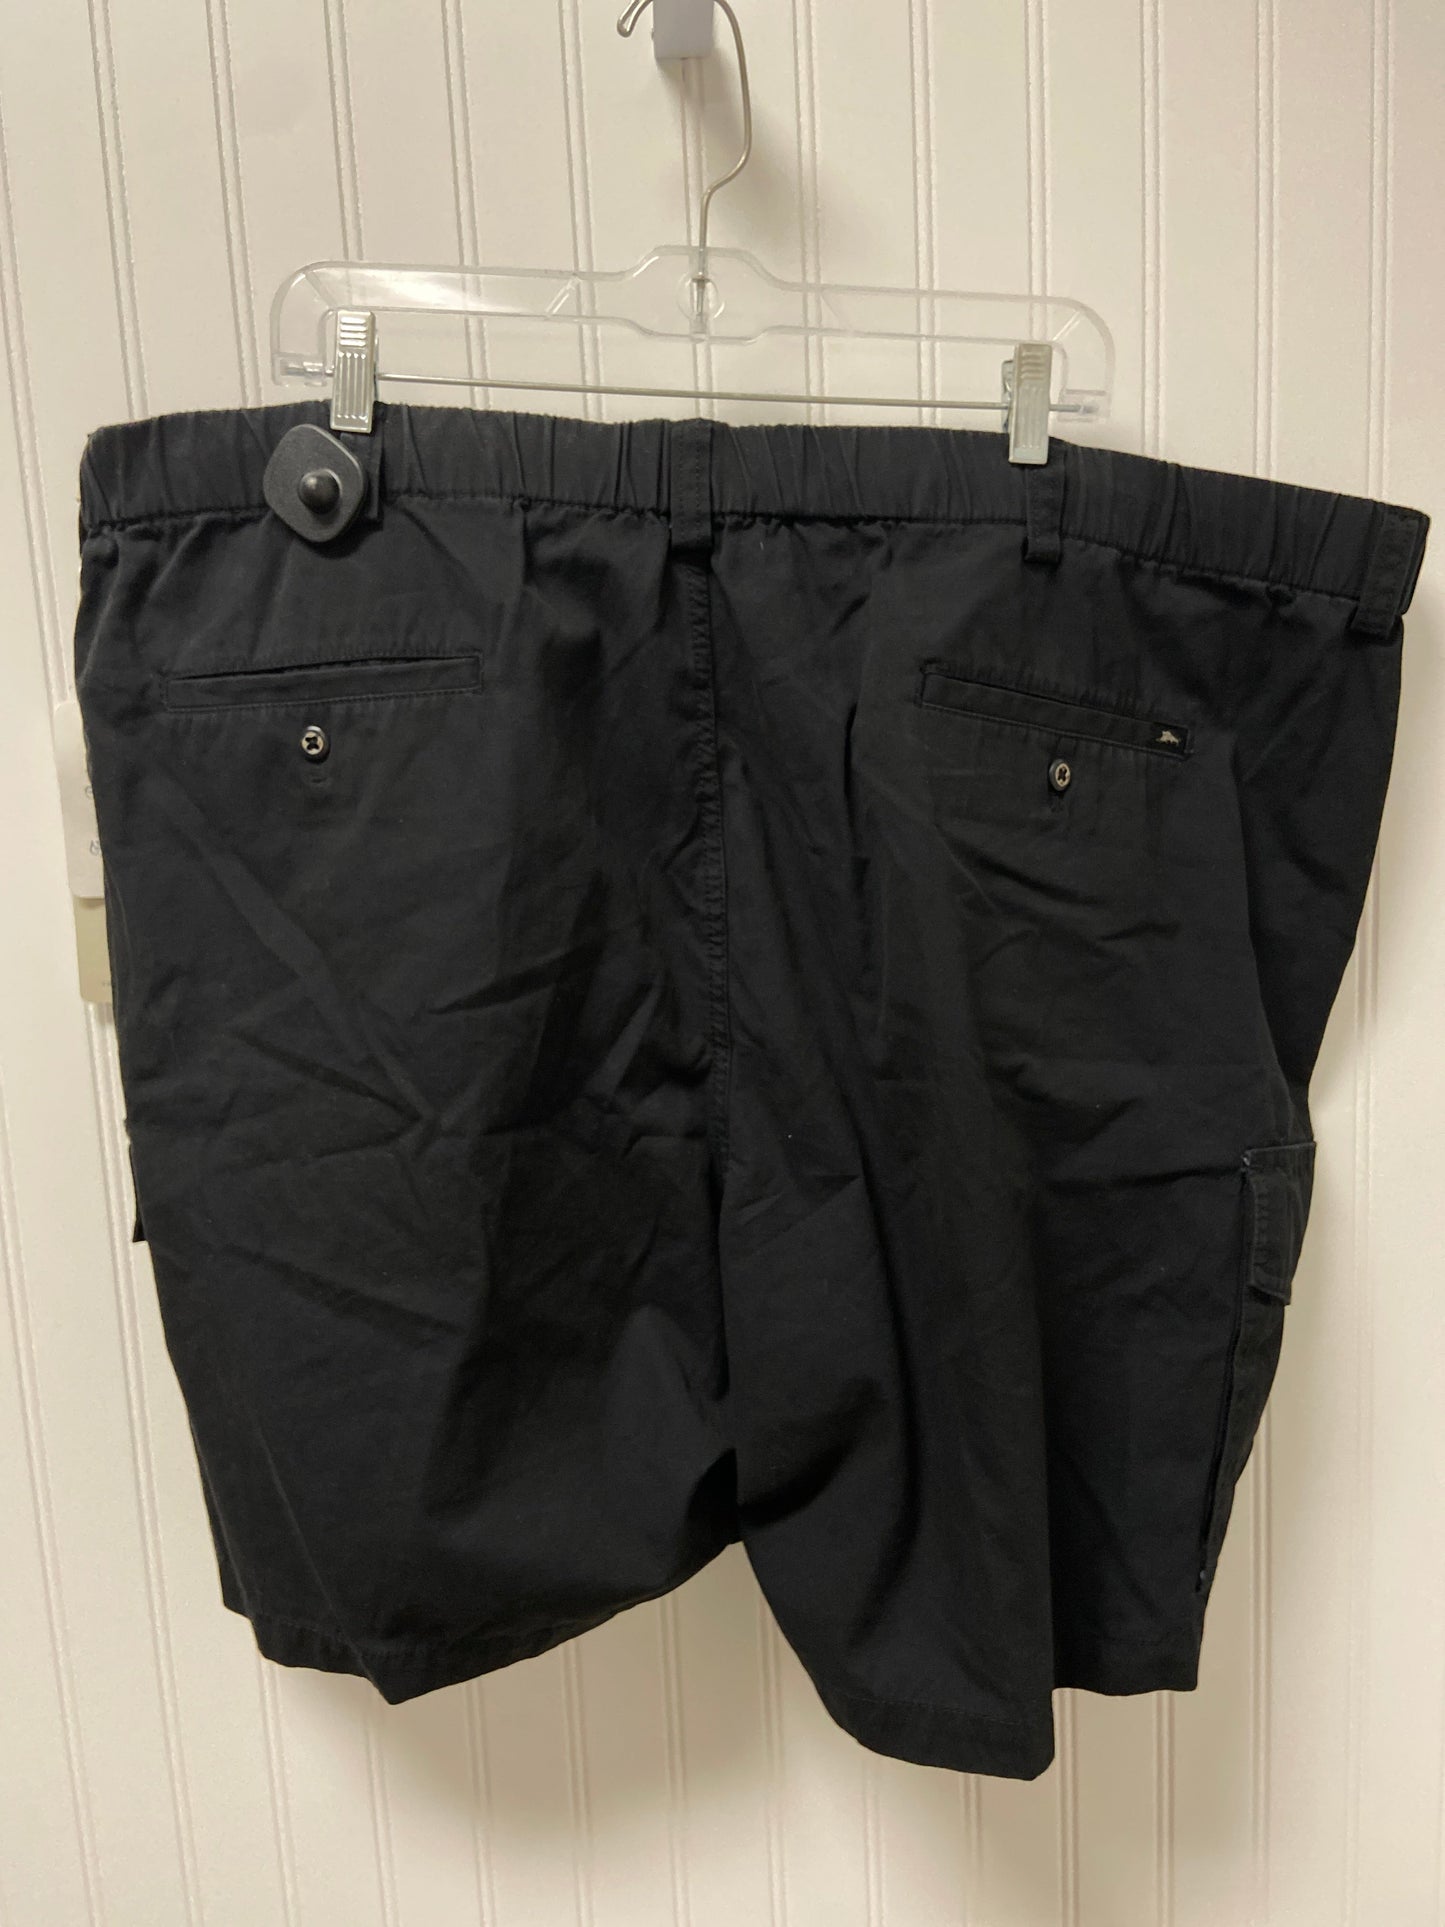 Black Shorts Tommy Bahama, Size 24